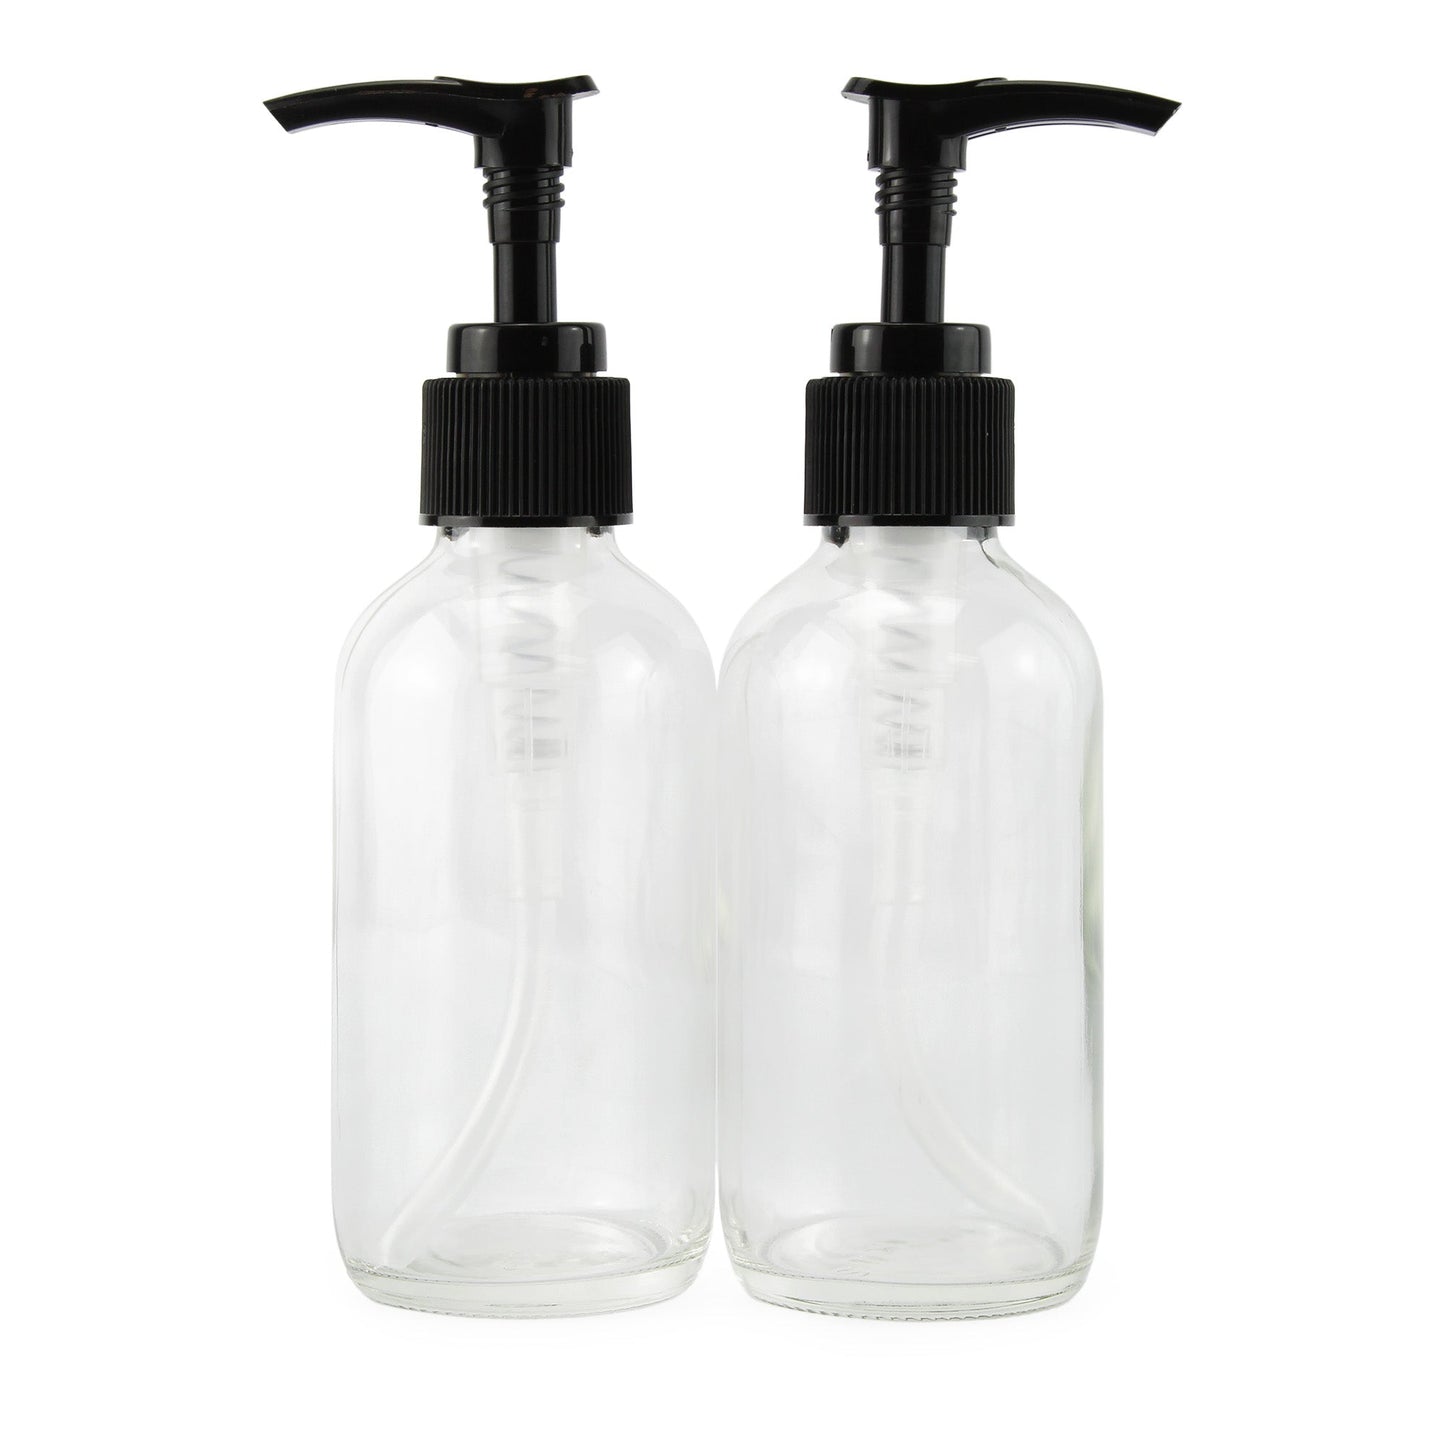 4oz Clear Glass Pump Bottles (4 Pack) - sh1421cb0CLEAR4oz